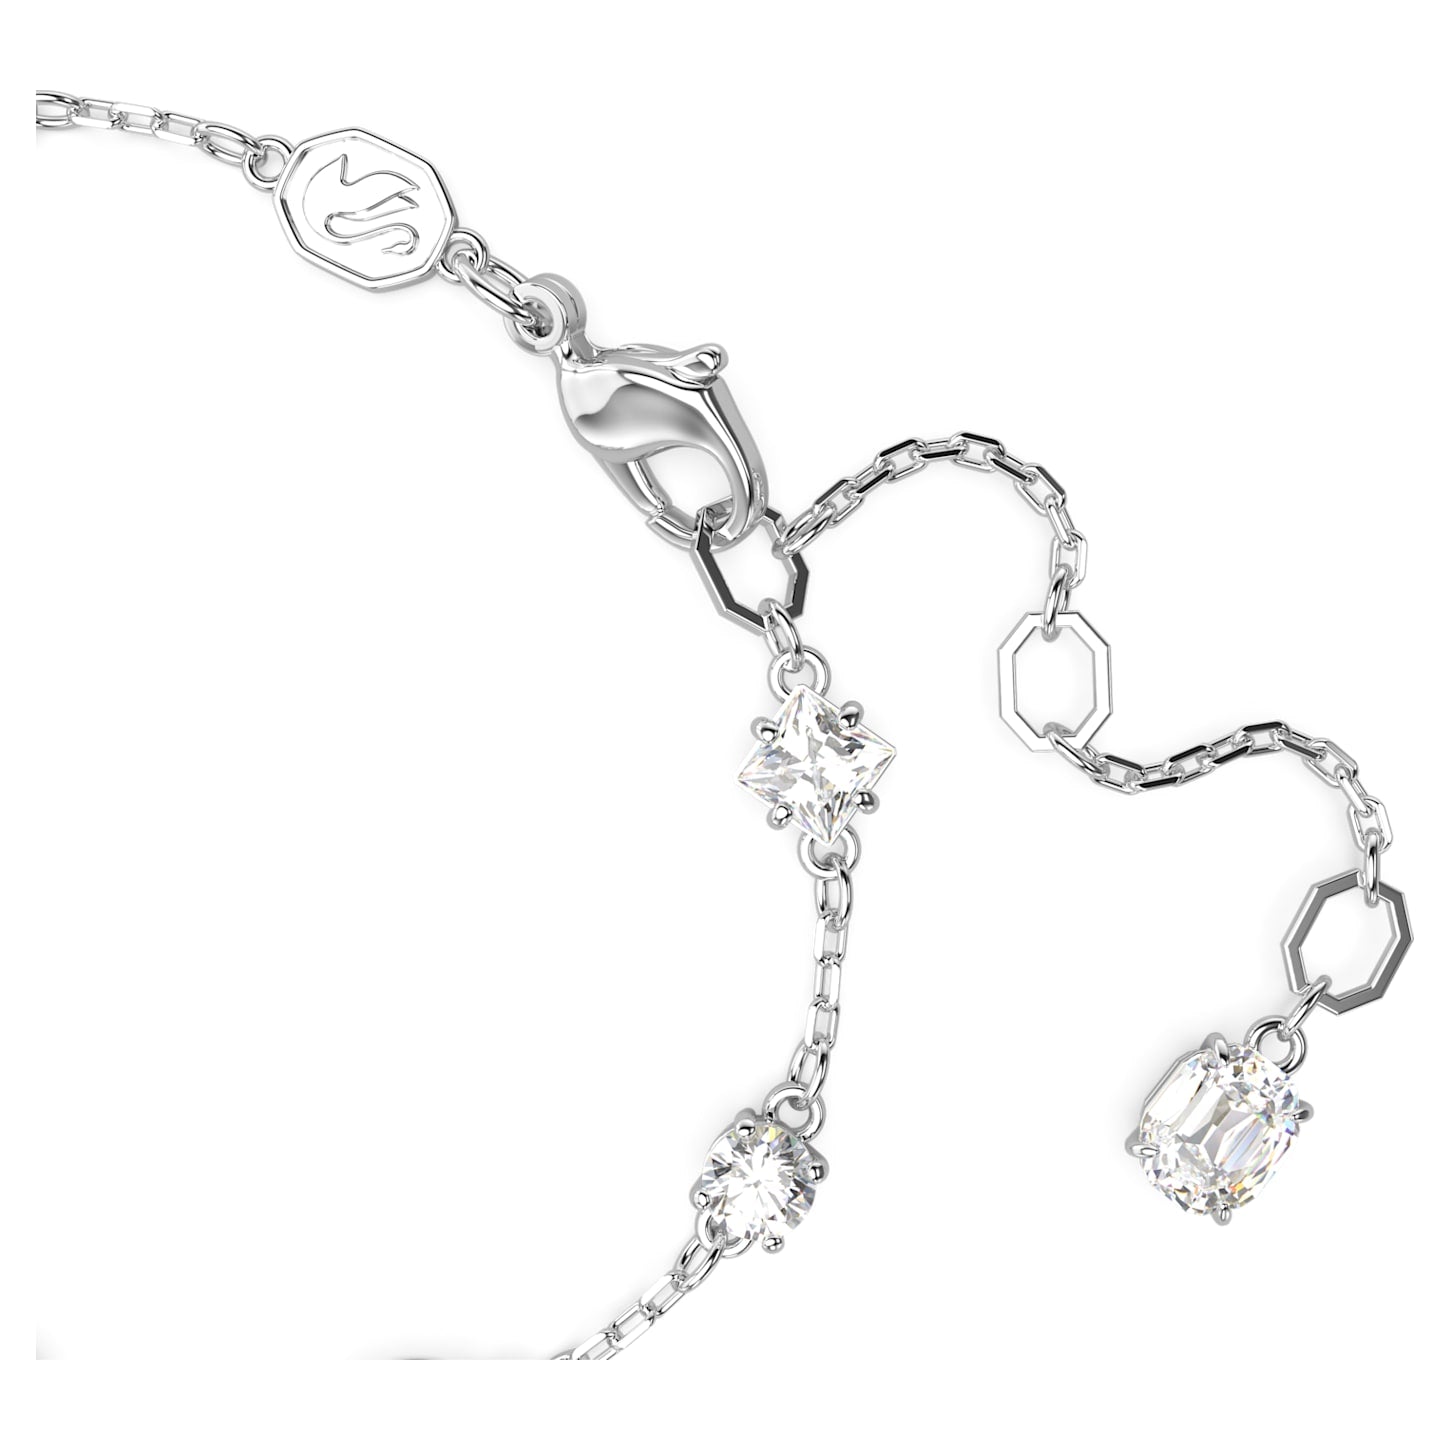 Mesmera – Weißes Silber – Armband – Swarovski